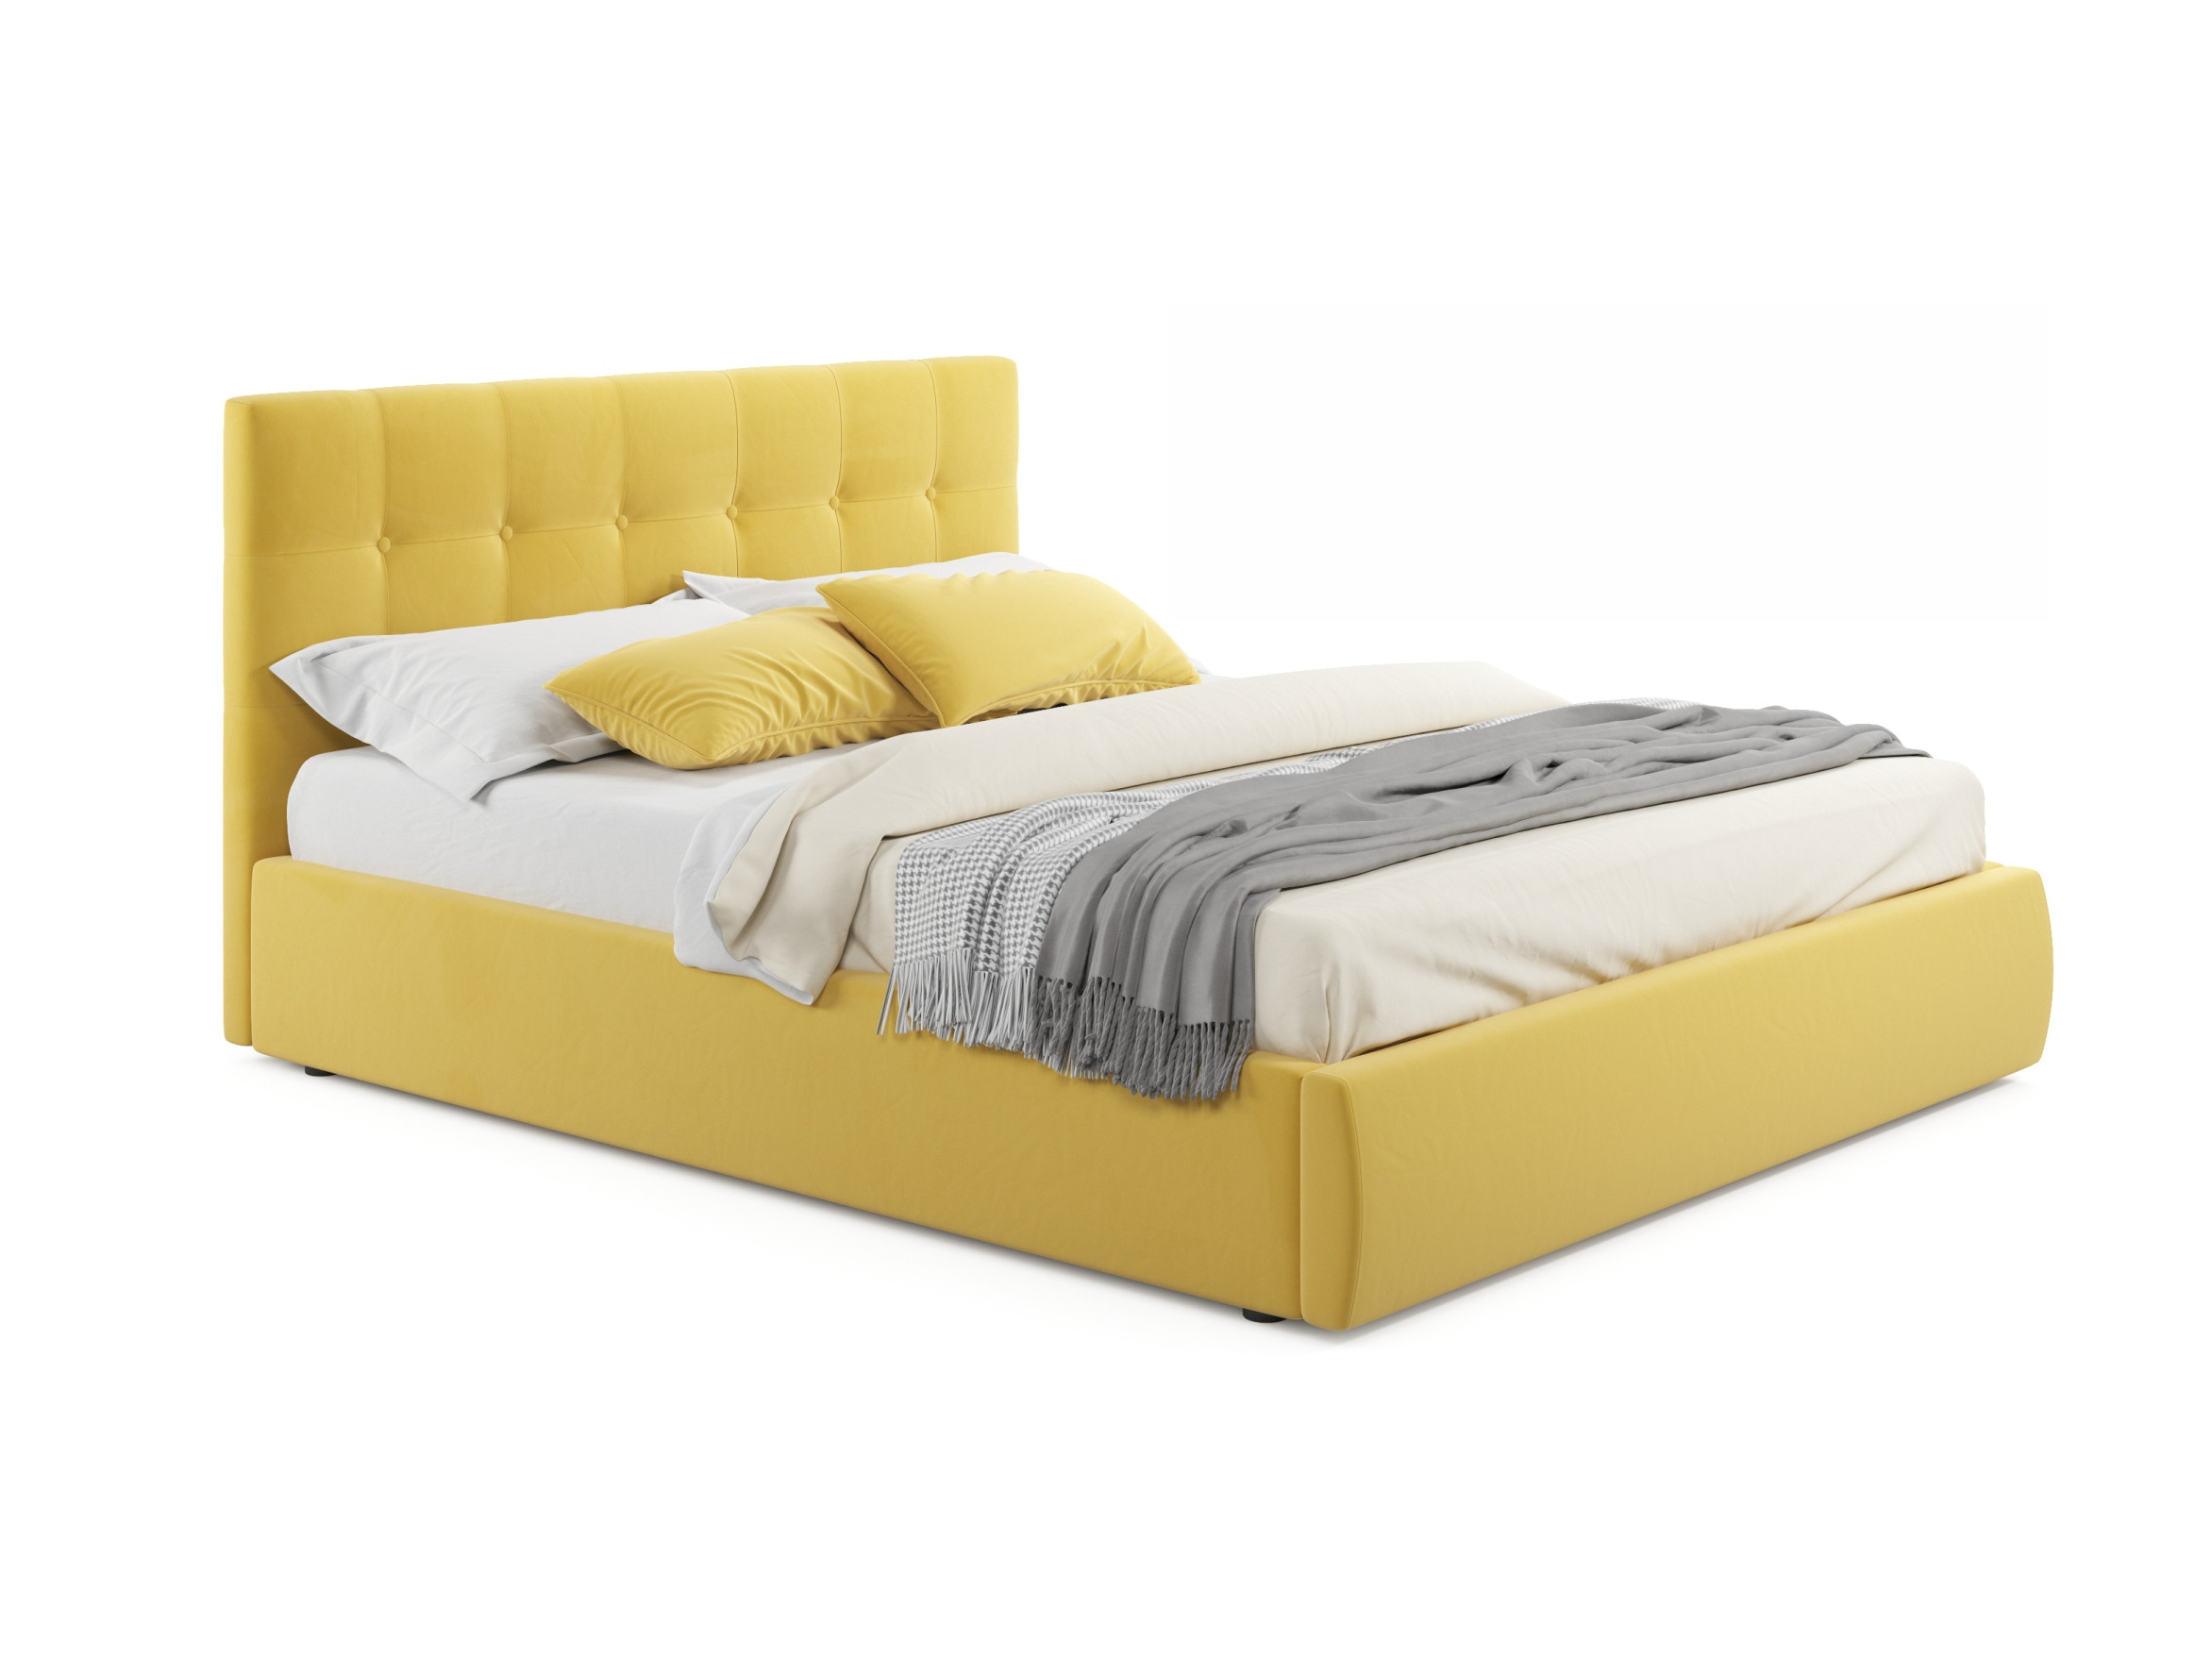 Мягкая кровать Selesta 1400 желтая с матрасом PROMO B COCOS с под мягкая кровать ameli 1400 желтая с подъемным механизмом с матрасом promo b cocos желтый желтый велюр дсп